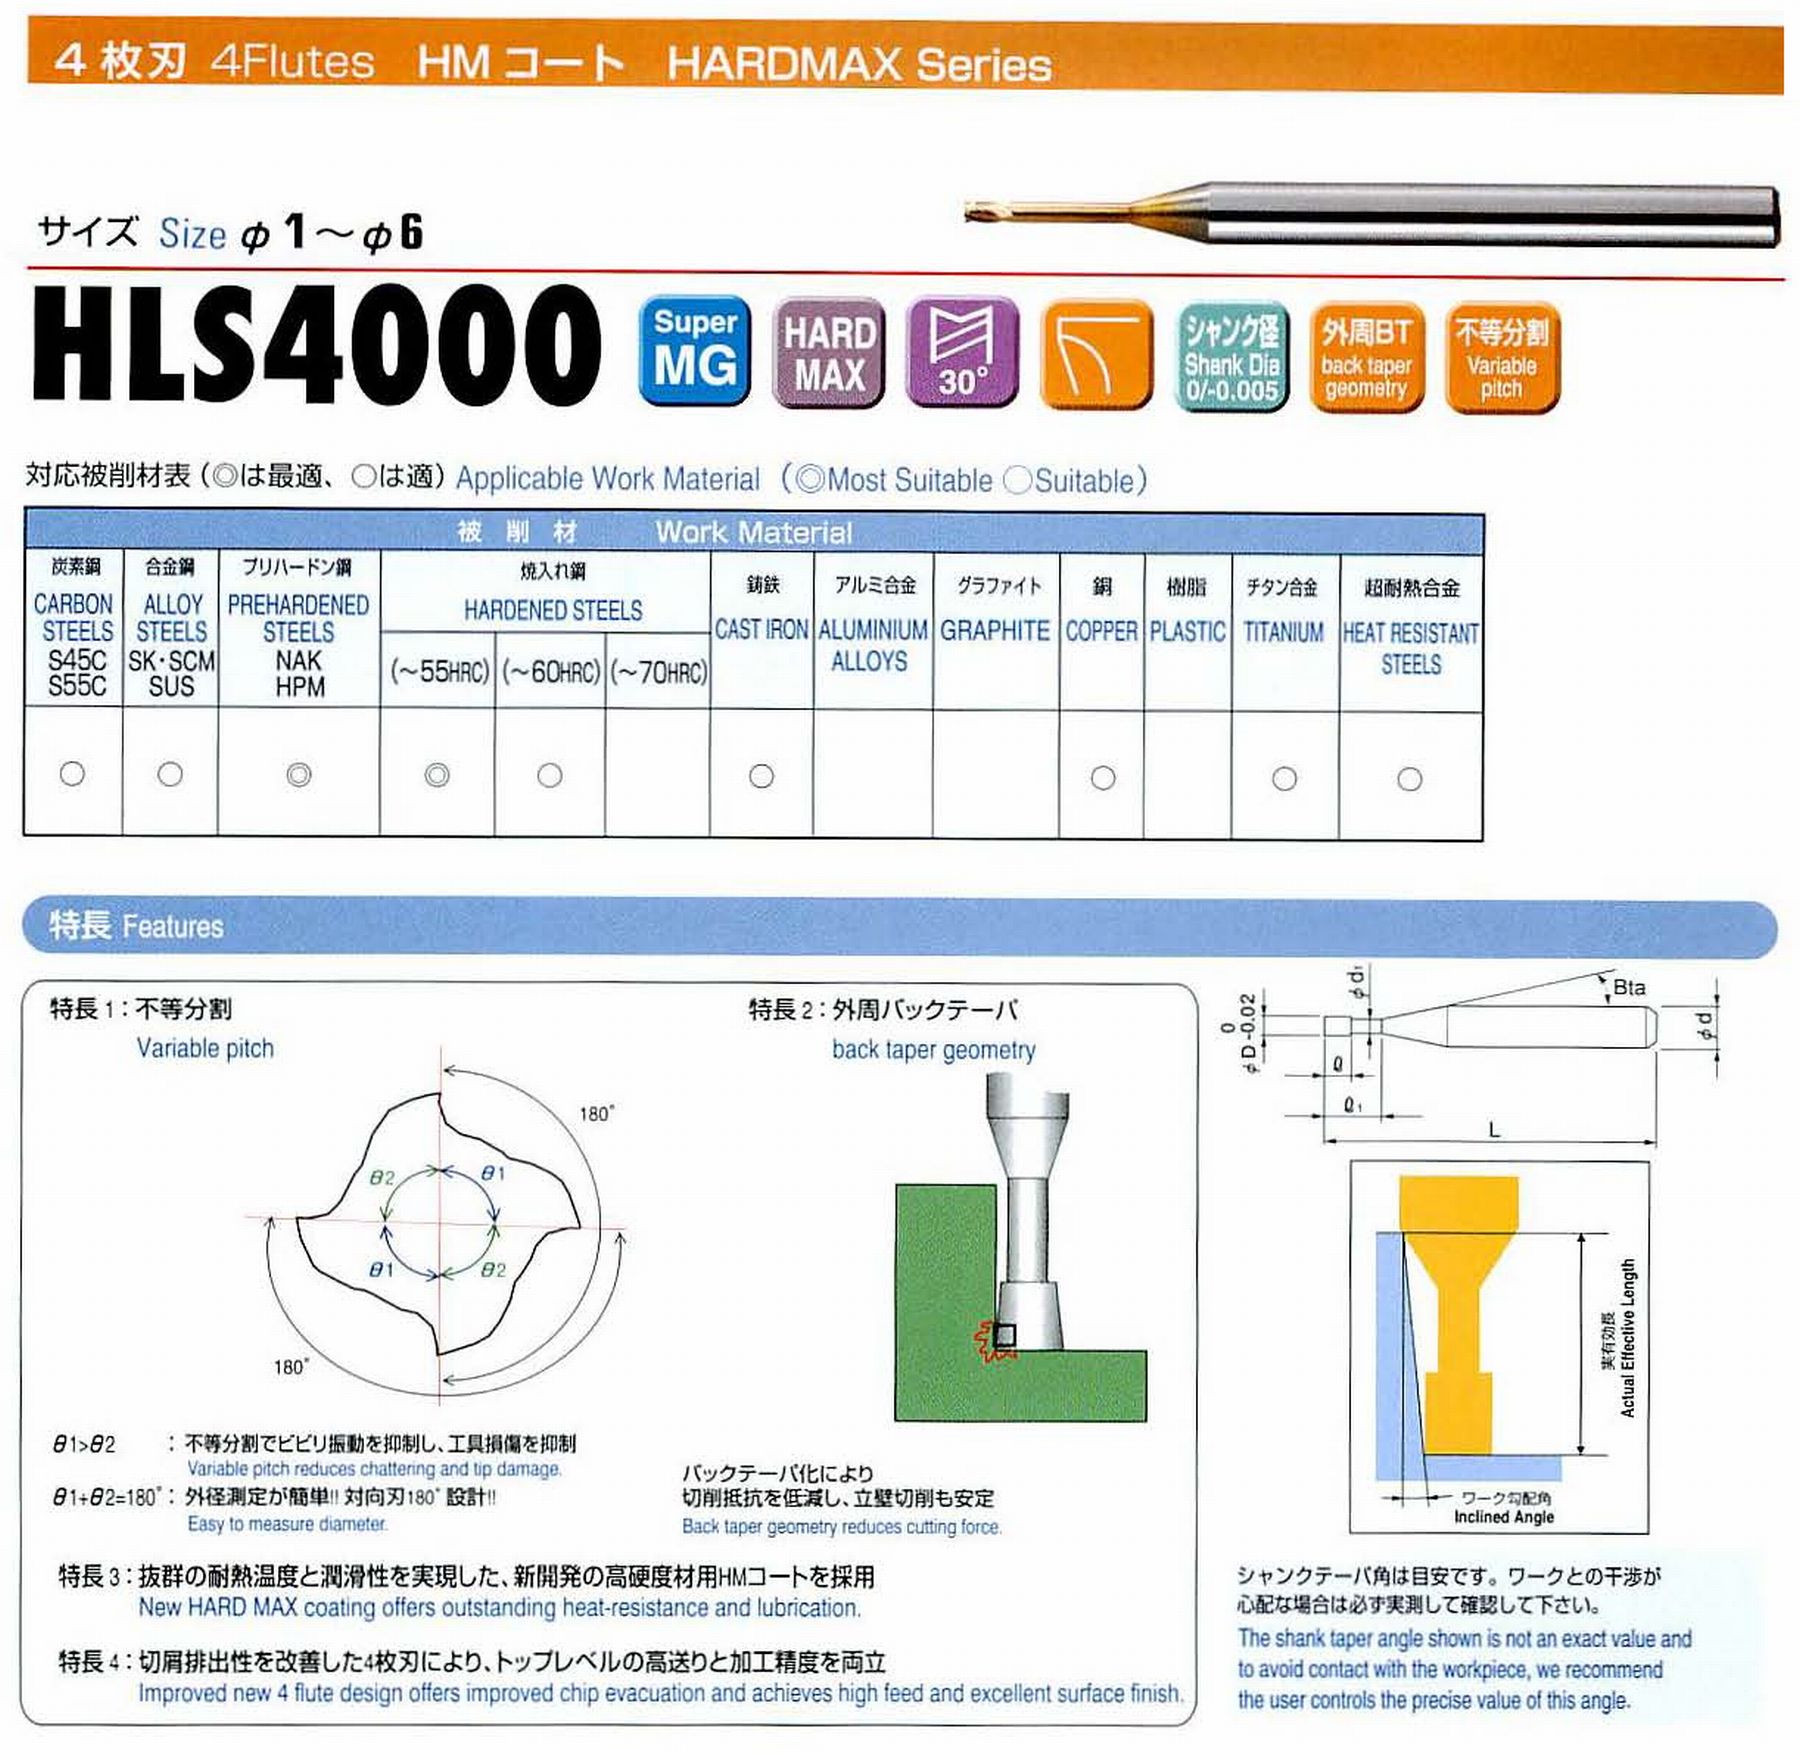 ユニオンツール 4枚刃 HLS4030-200 外径3 有効長20 刃長3 首径2.92 シャンクテーパ角16° 全長60 シャンク径6